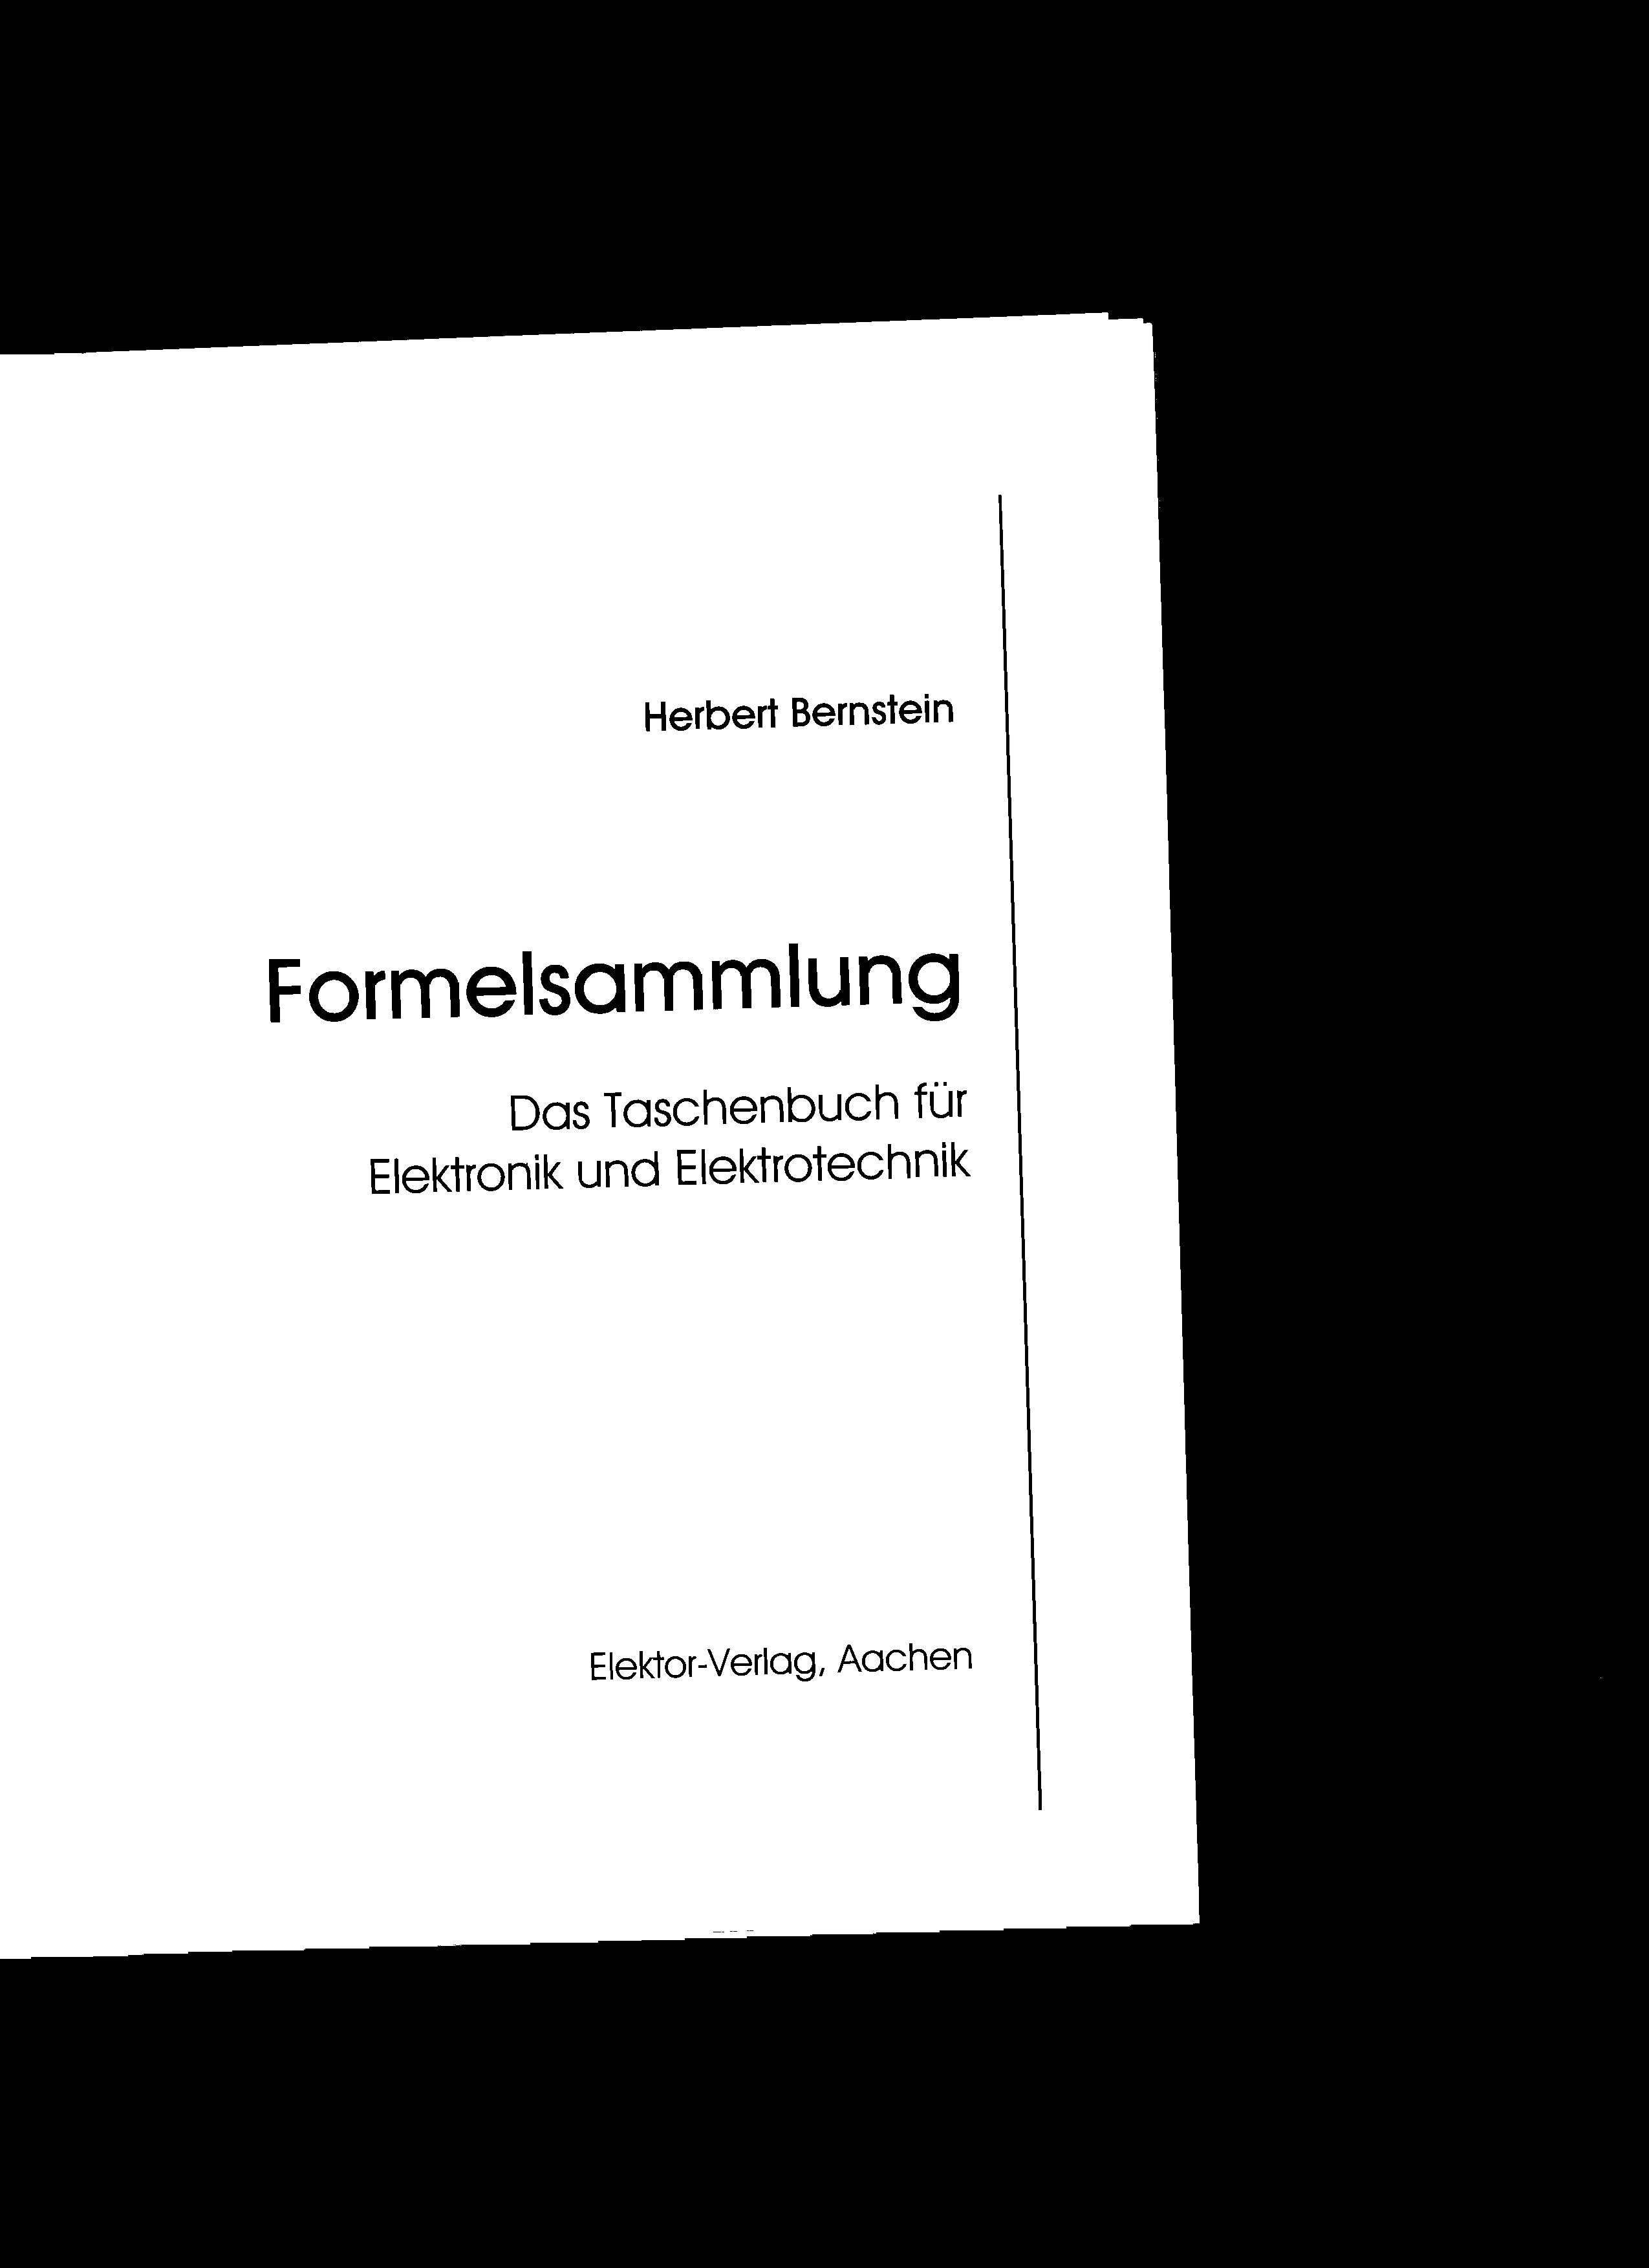 Herbert Bernstein Formelsammlung Das Taschenbuch für